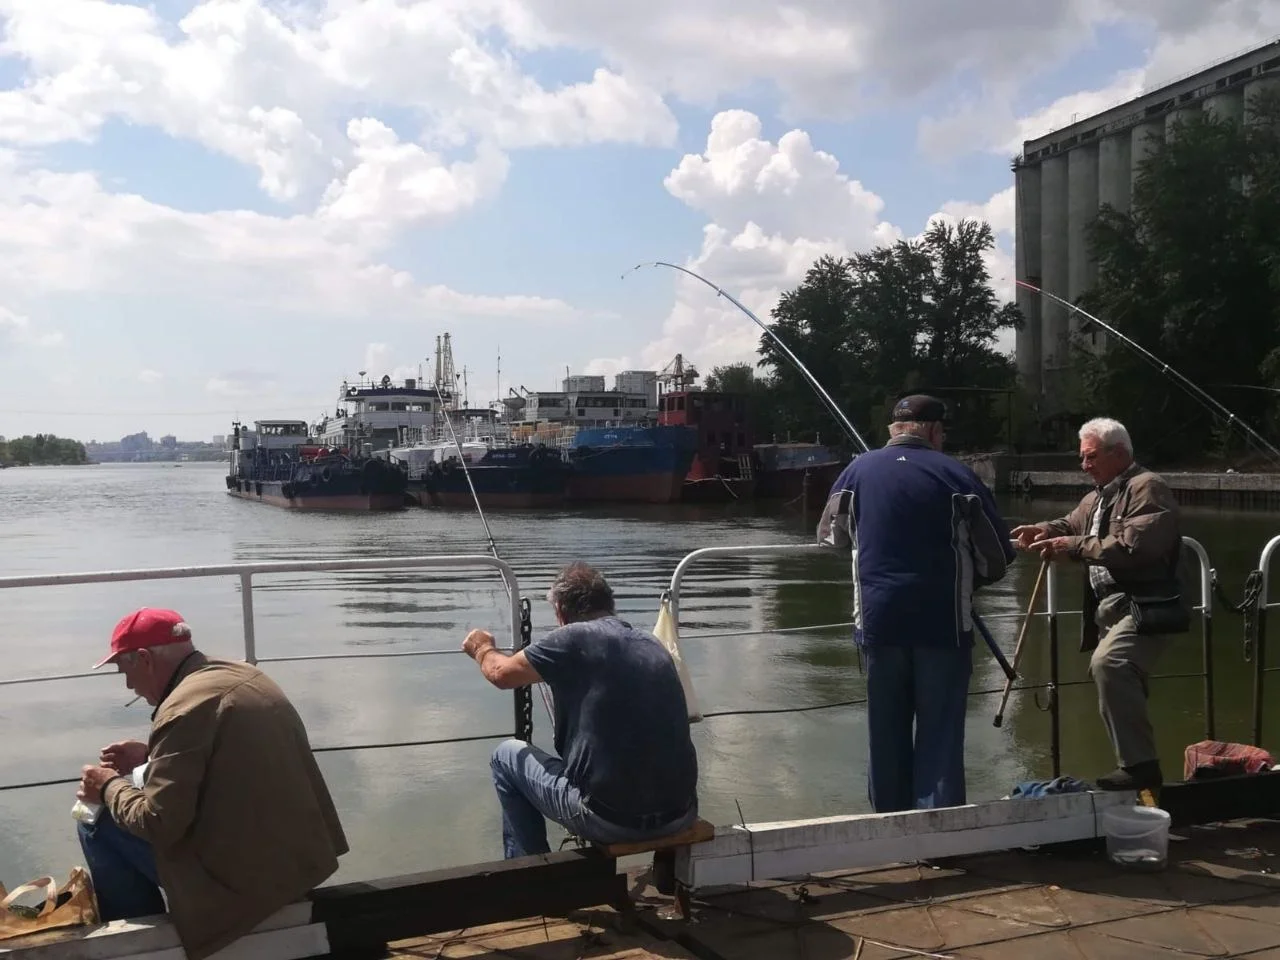 Сома размером больше человека выловил рыбак в Ростове